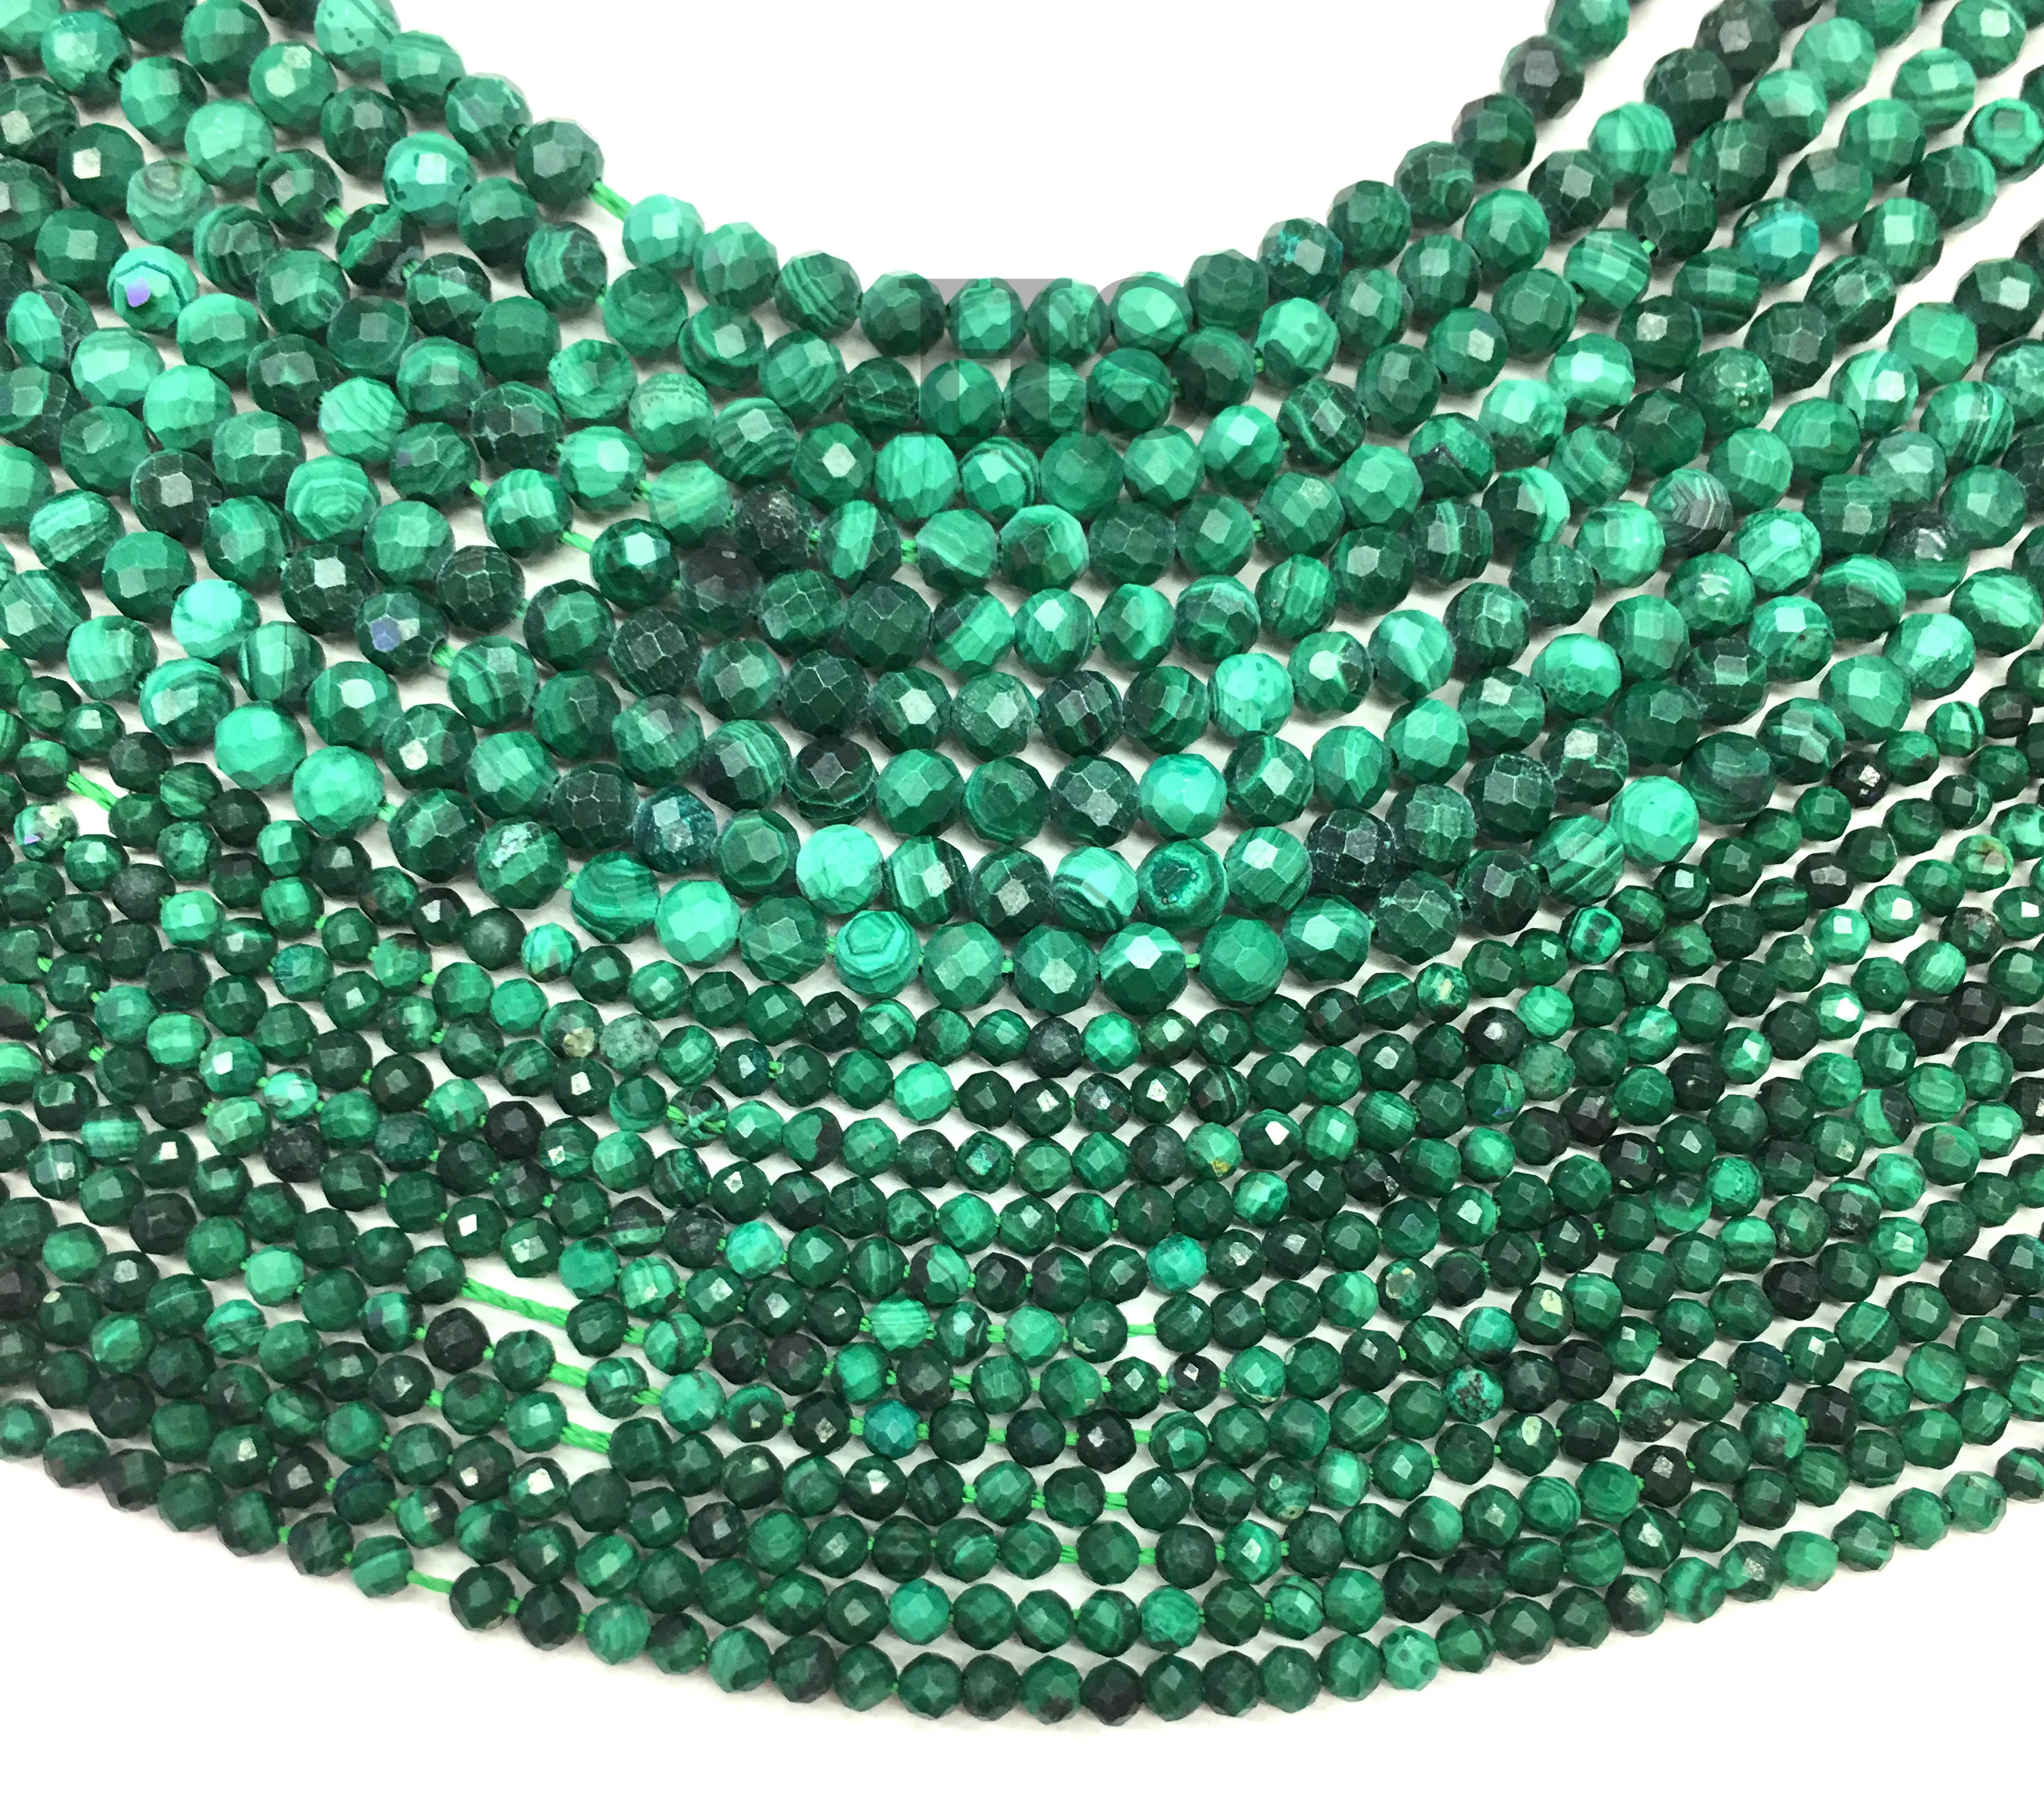 Green Malachite Gemstone Beads 13 Inch Strand 2 MM Faceted Malachite Gemstone Handmade Beads Malachite Round Shape Stone Your Anniversary